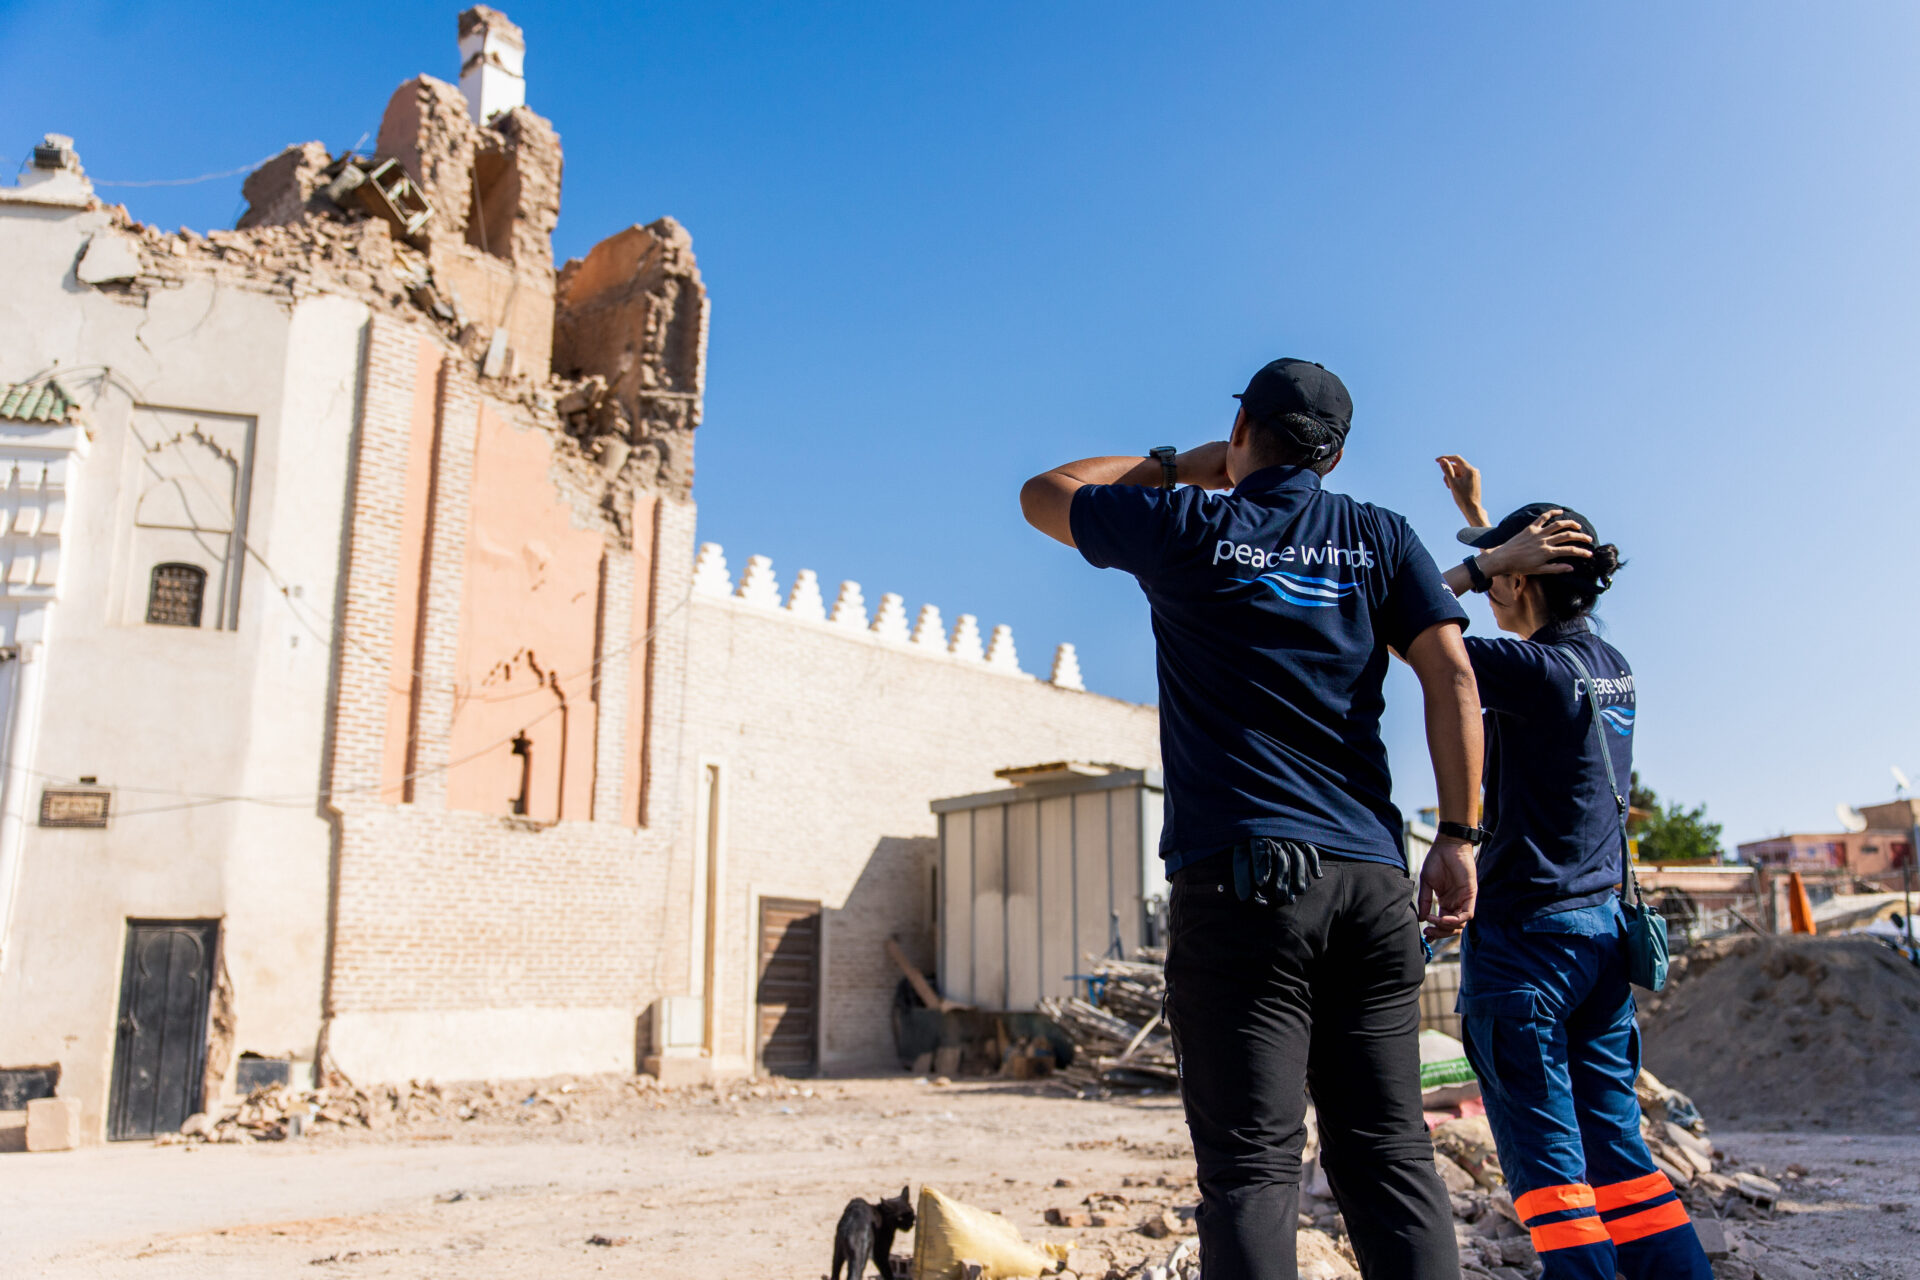 【モロッコ地震】 崩れ落ちたモスク─マラケシュ旧市街の被害状況